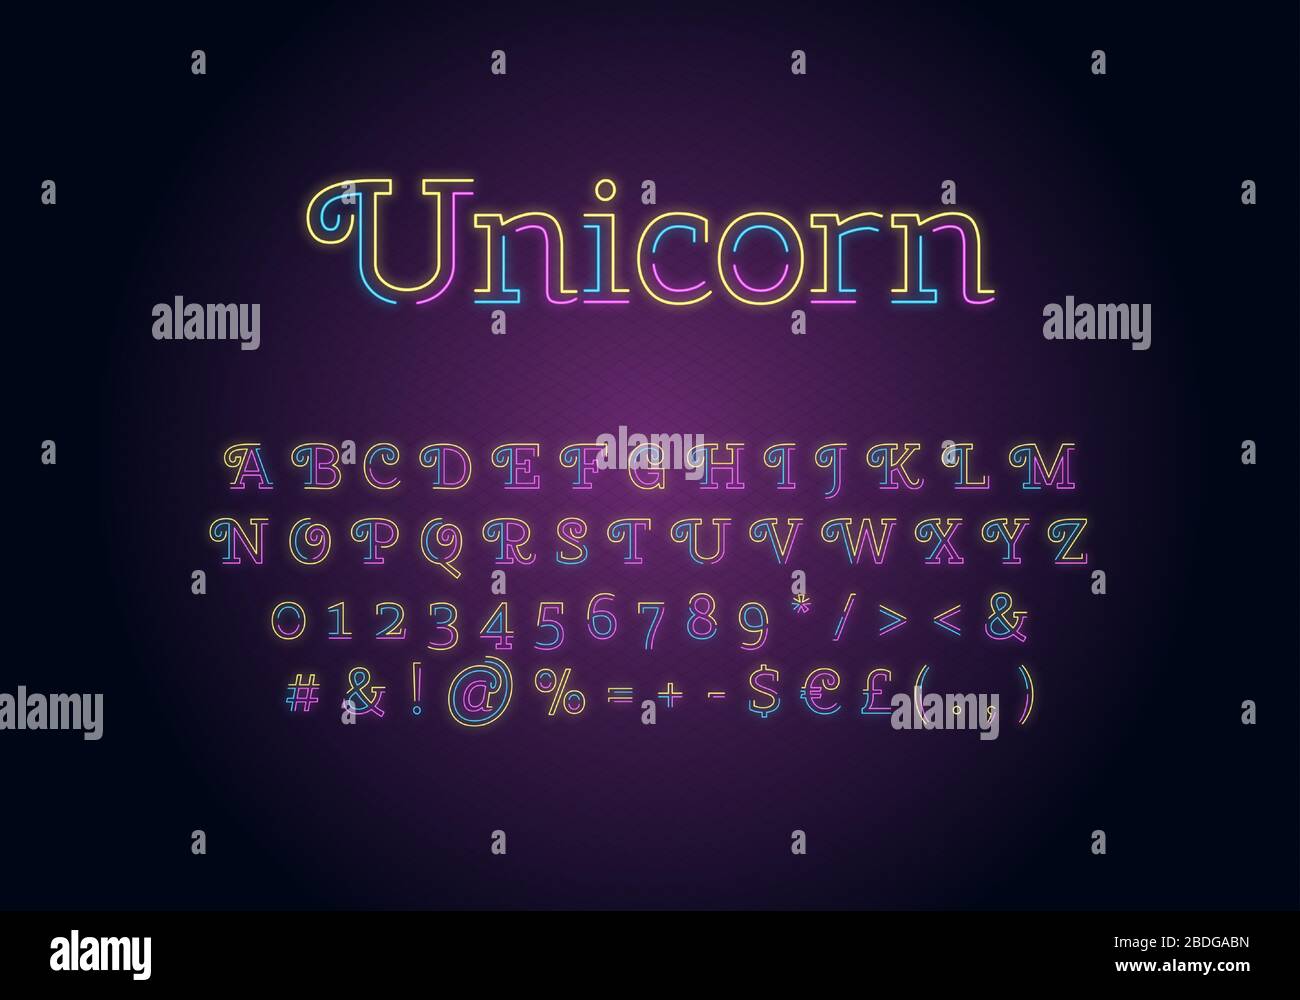 Unicorn Neon Light Schriftartvorlage. Mehrfarbiges beleuchtetes Vektoralphabet festgelegt. Helle Großbuchstaben, Zahlen und Symbole mit strahlendem äußeren Effekt Stock Vektor